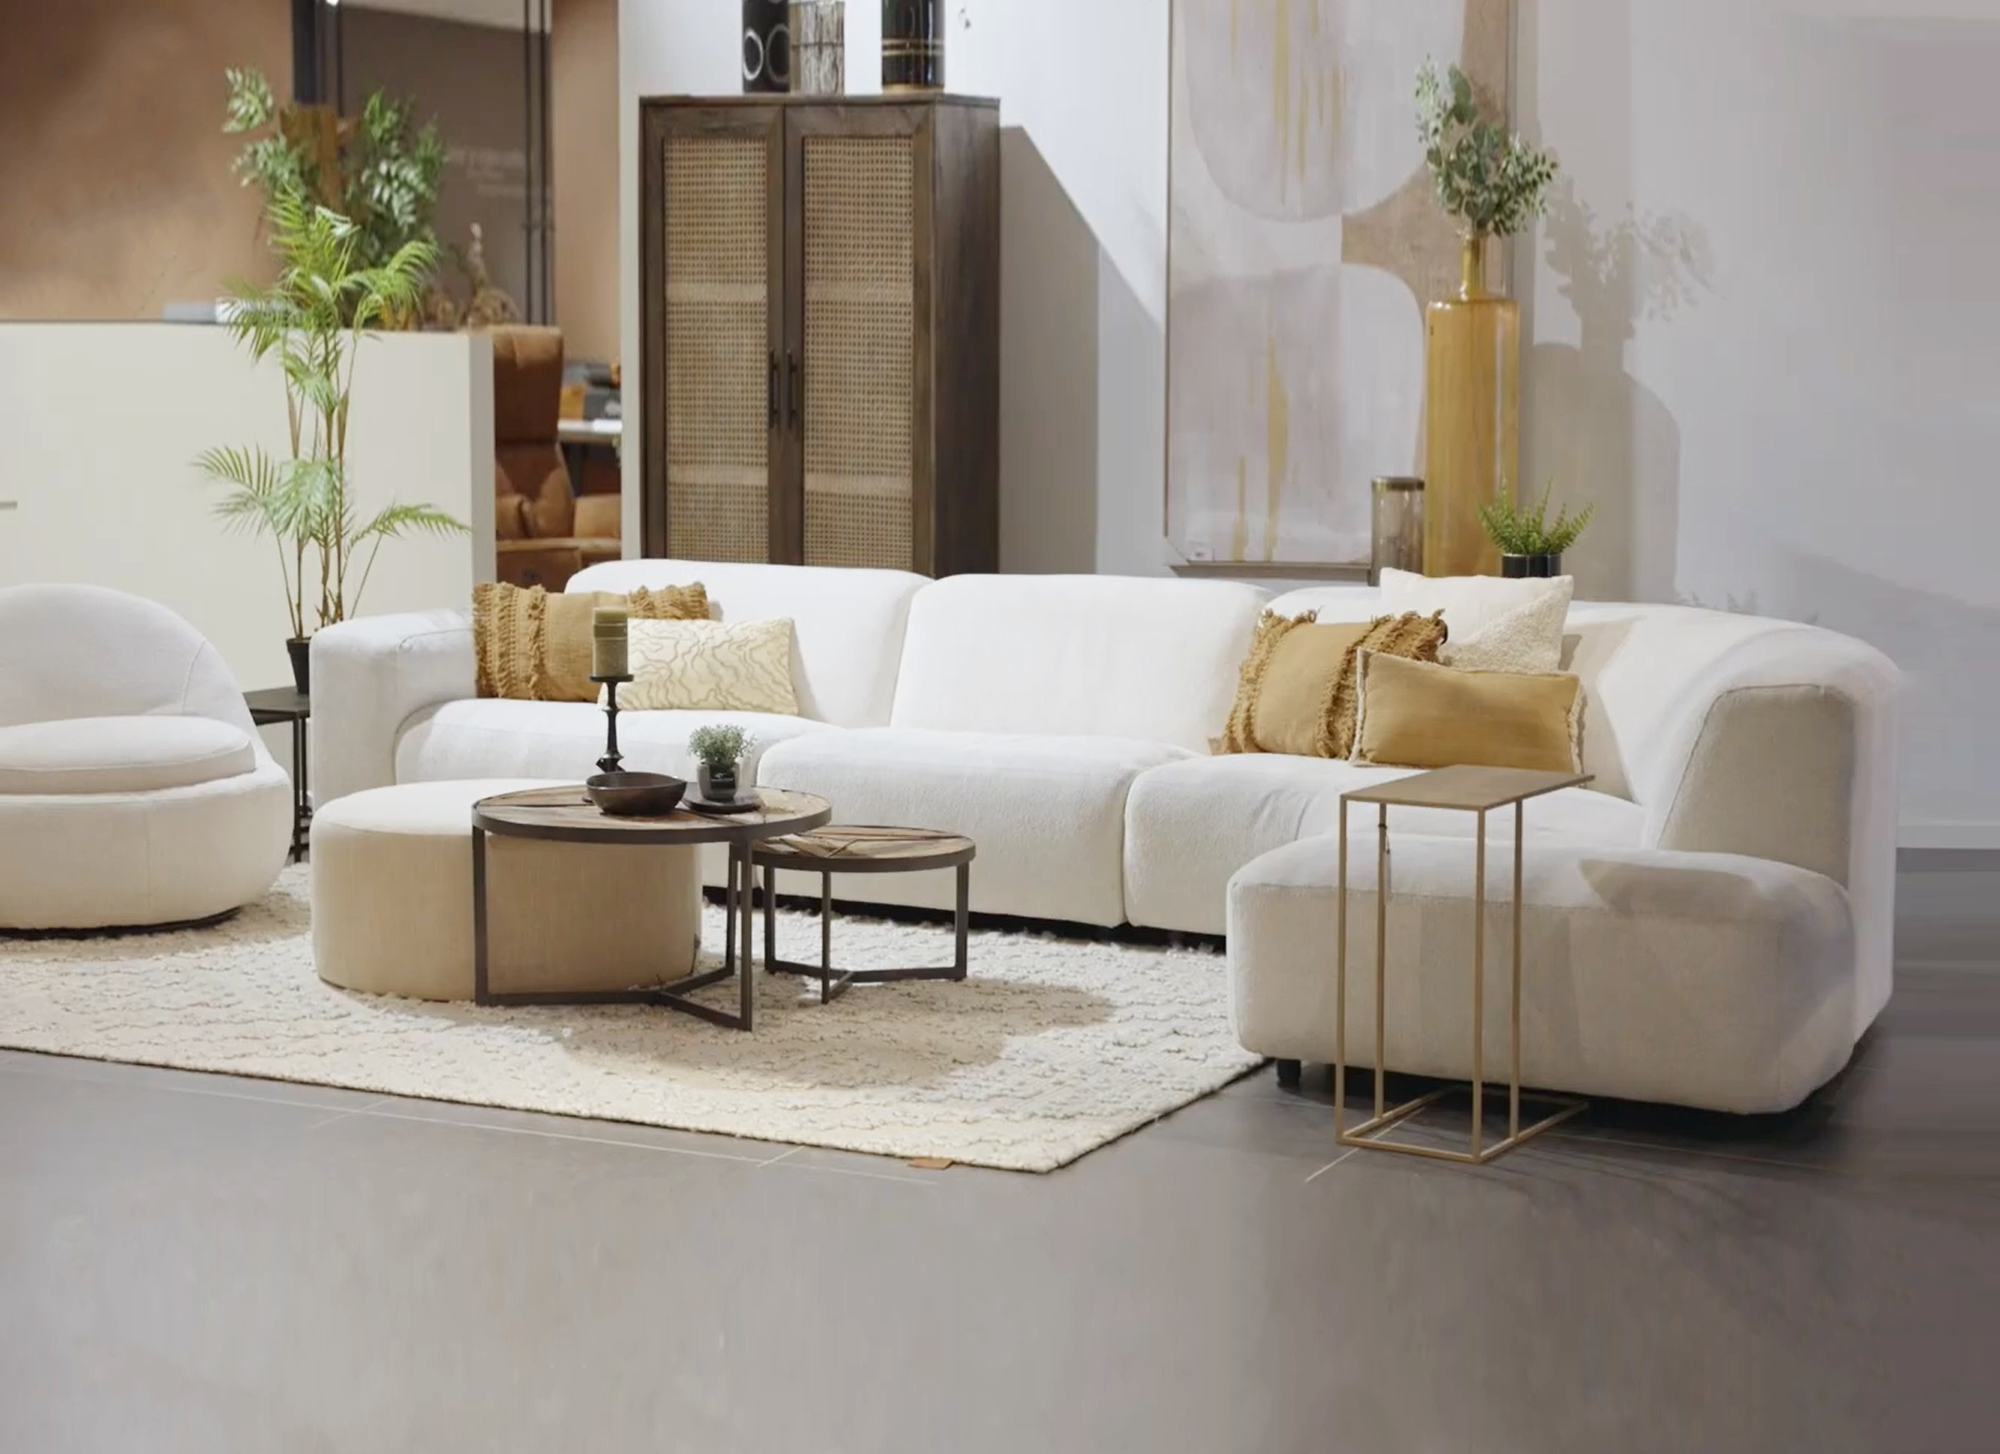 Mm Aandringen Emuleren Design Zetels met ronde vormen: Exclusieve design sofa's van Evolution!